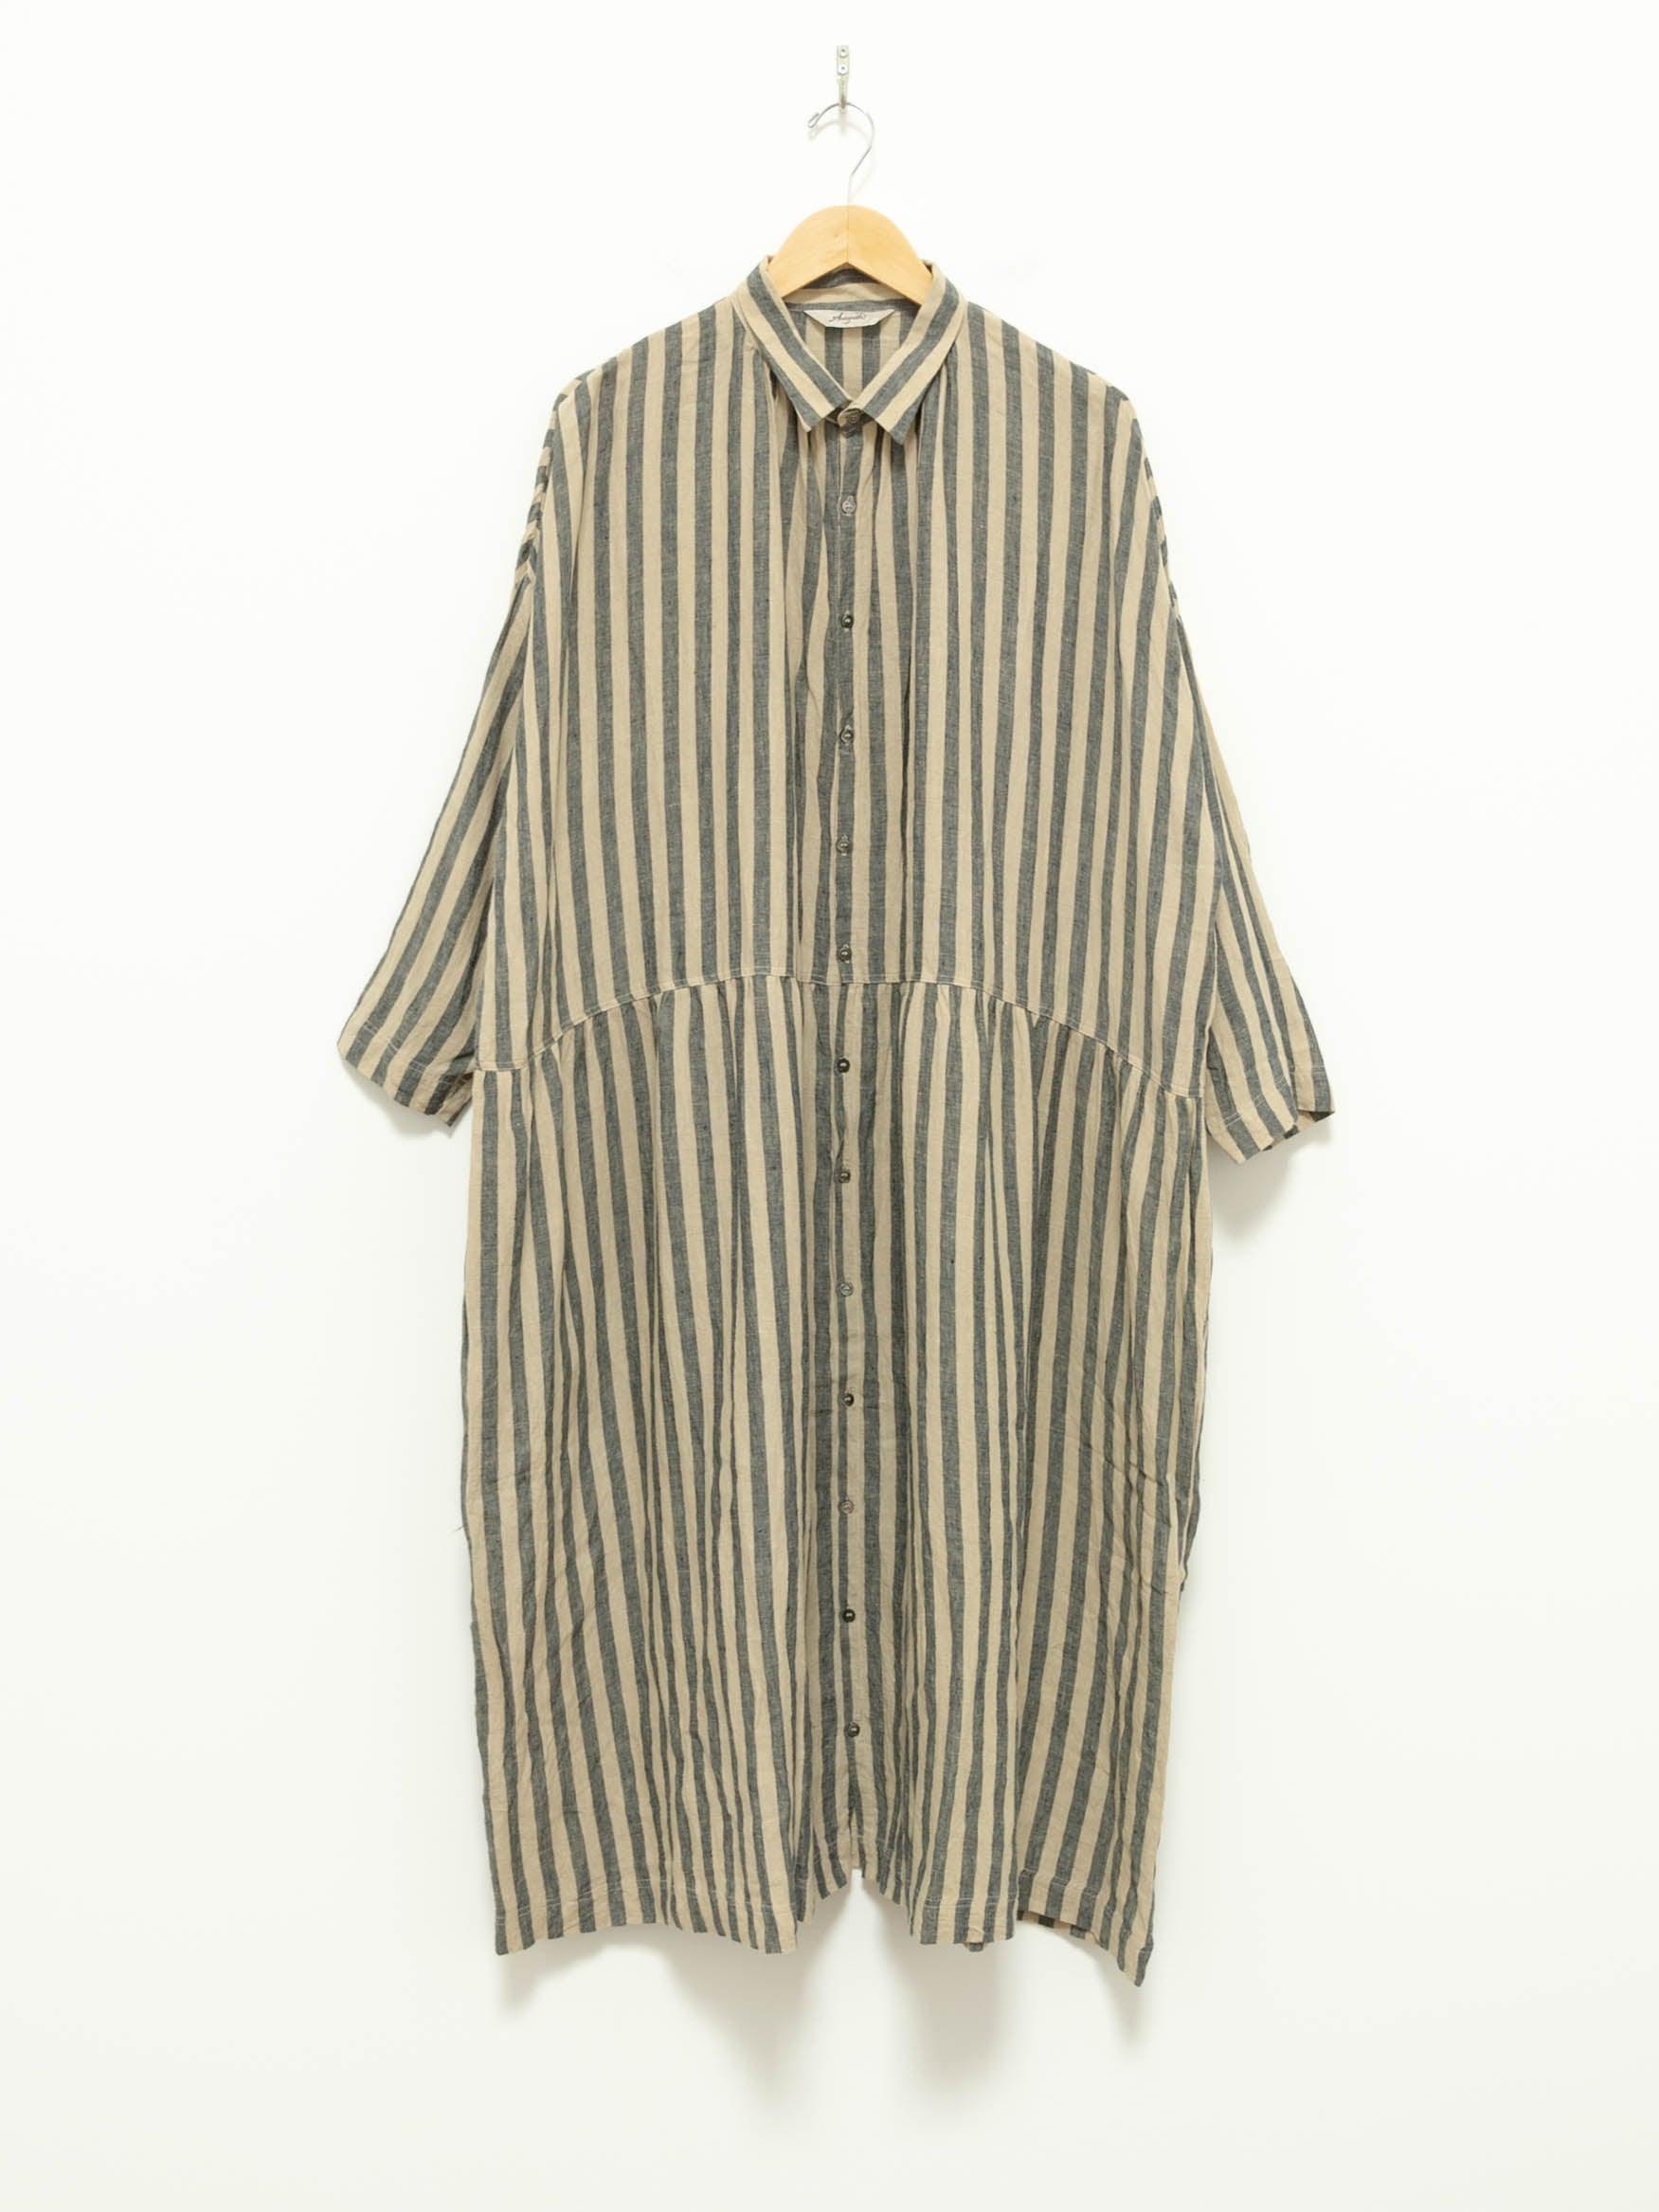 Namu Shop - Ichi Antiquites Linen Azumadaki Stripe Dress - Beige x Blue